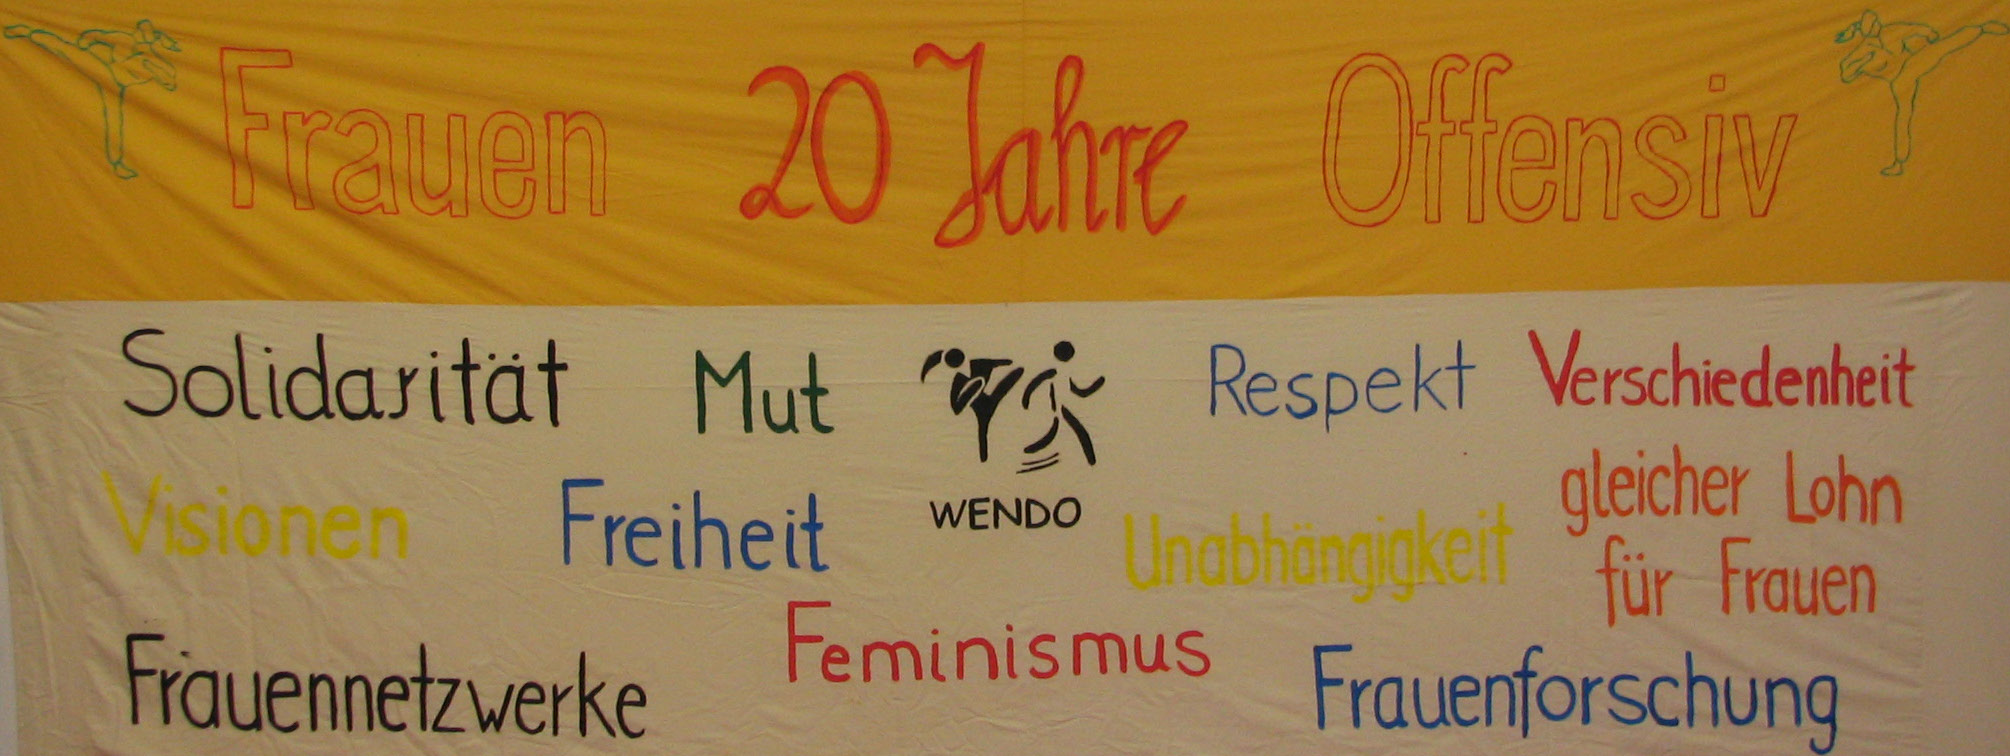 Frauen Offensiv Banner